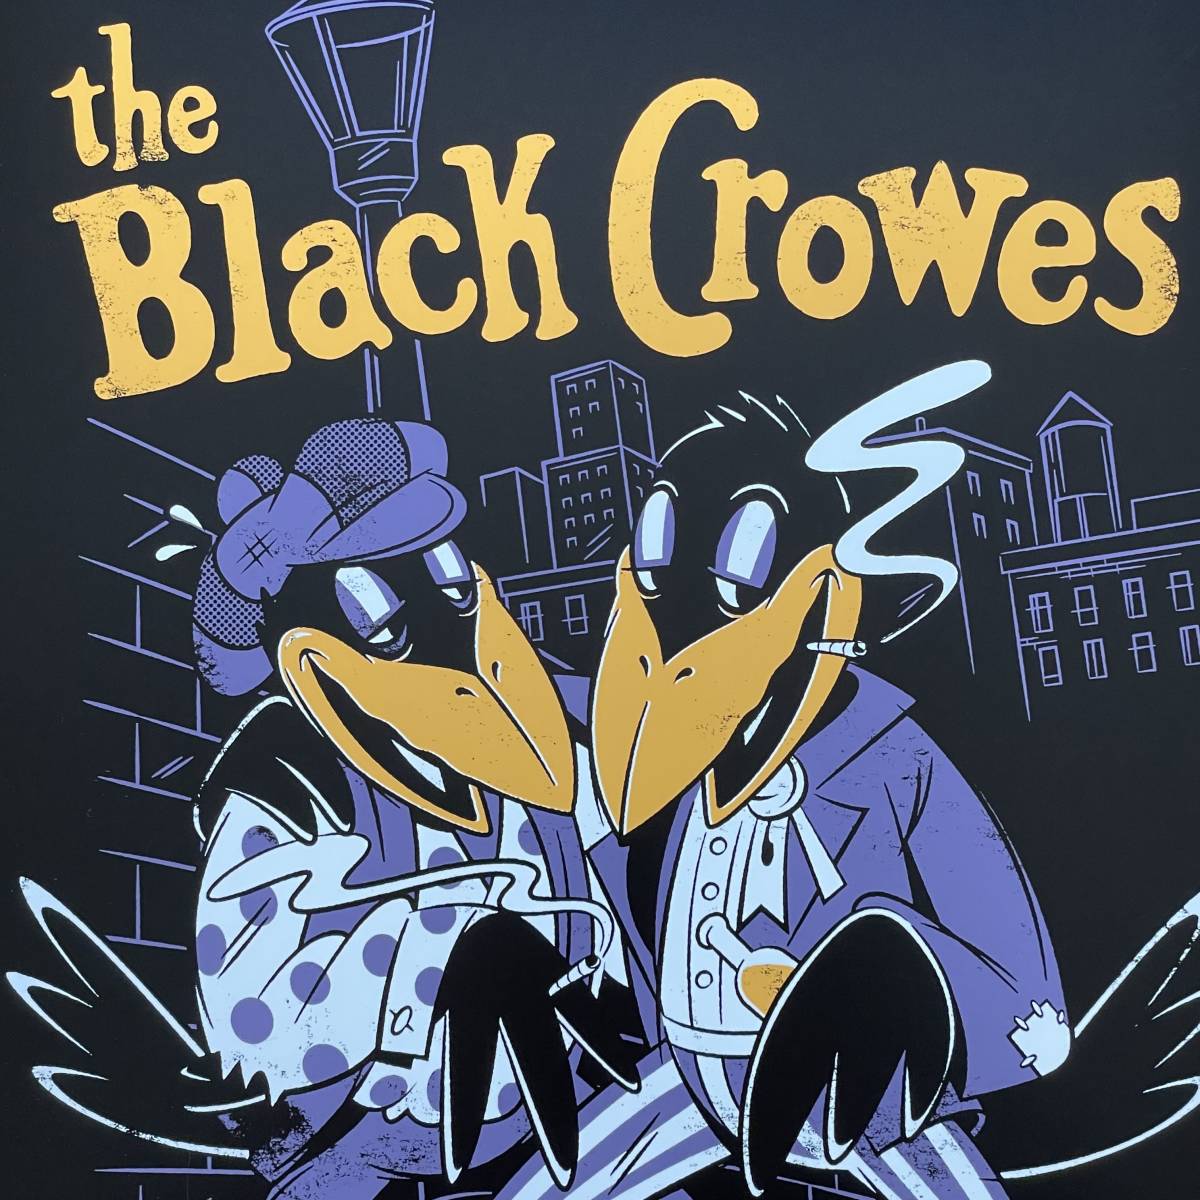 ポスター★ブラック・クロウズ 2019 NYC 再結成ライブ★Black Crowes reunion at the Bowery Ballroom in NYC★Magpie Salute_画像4